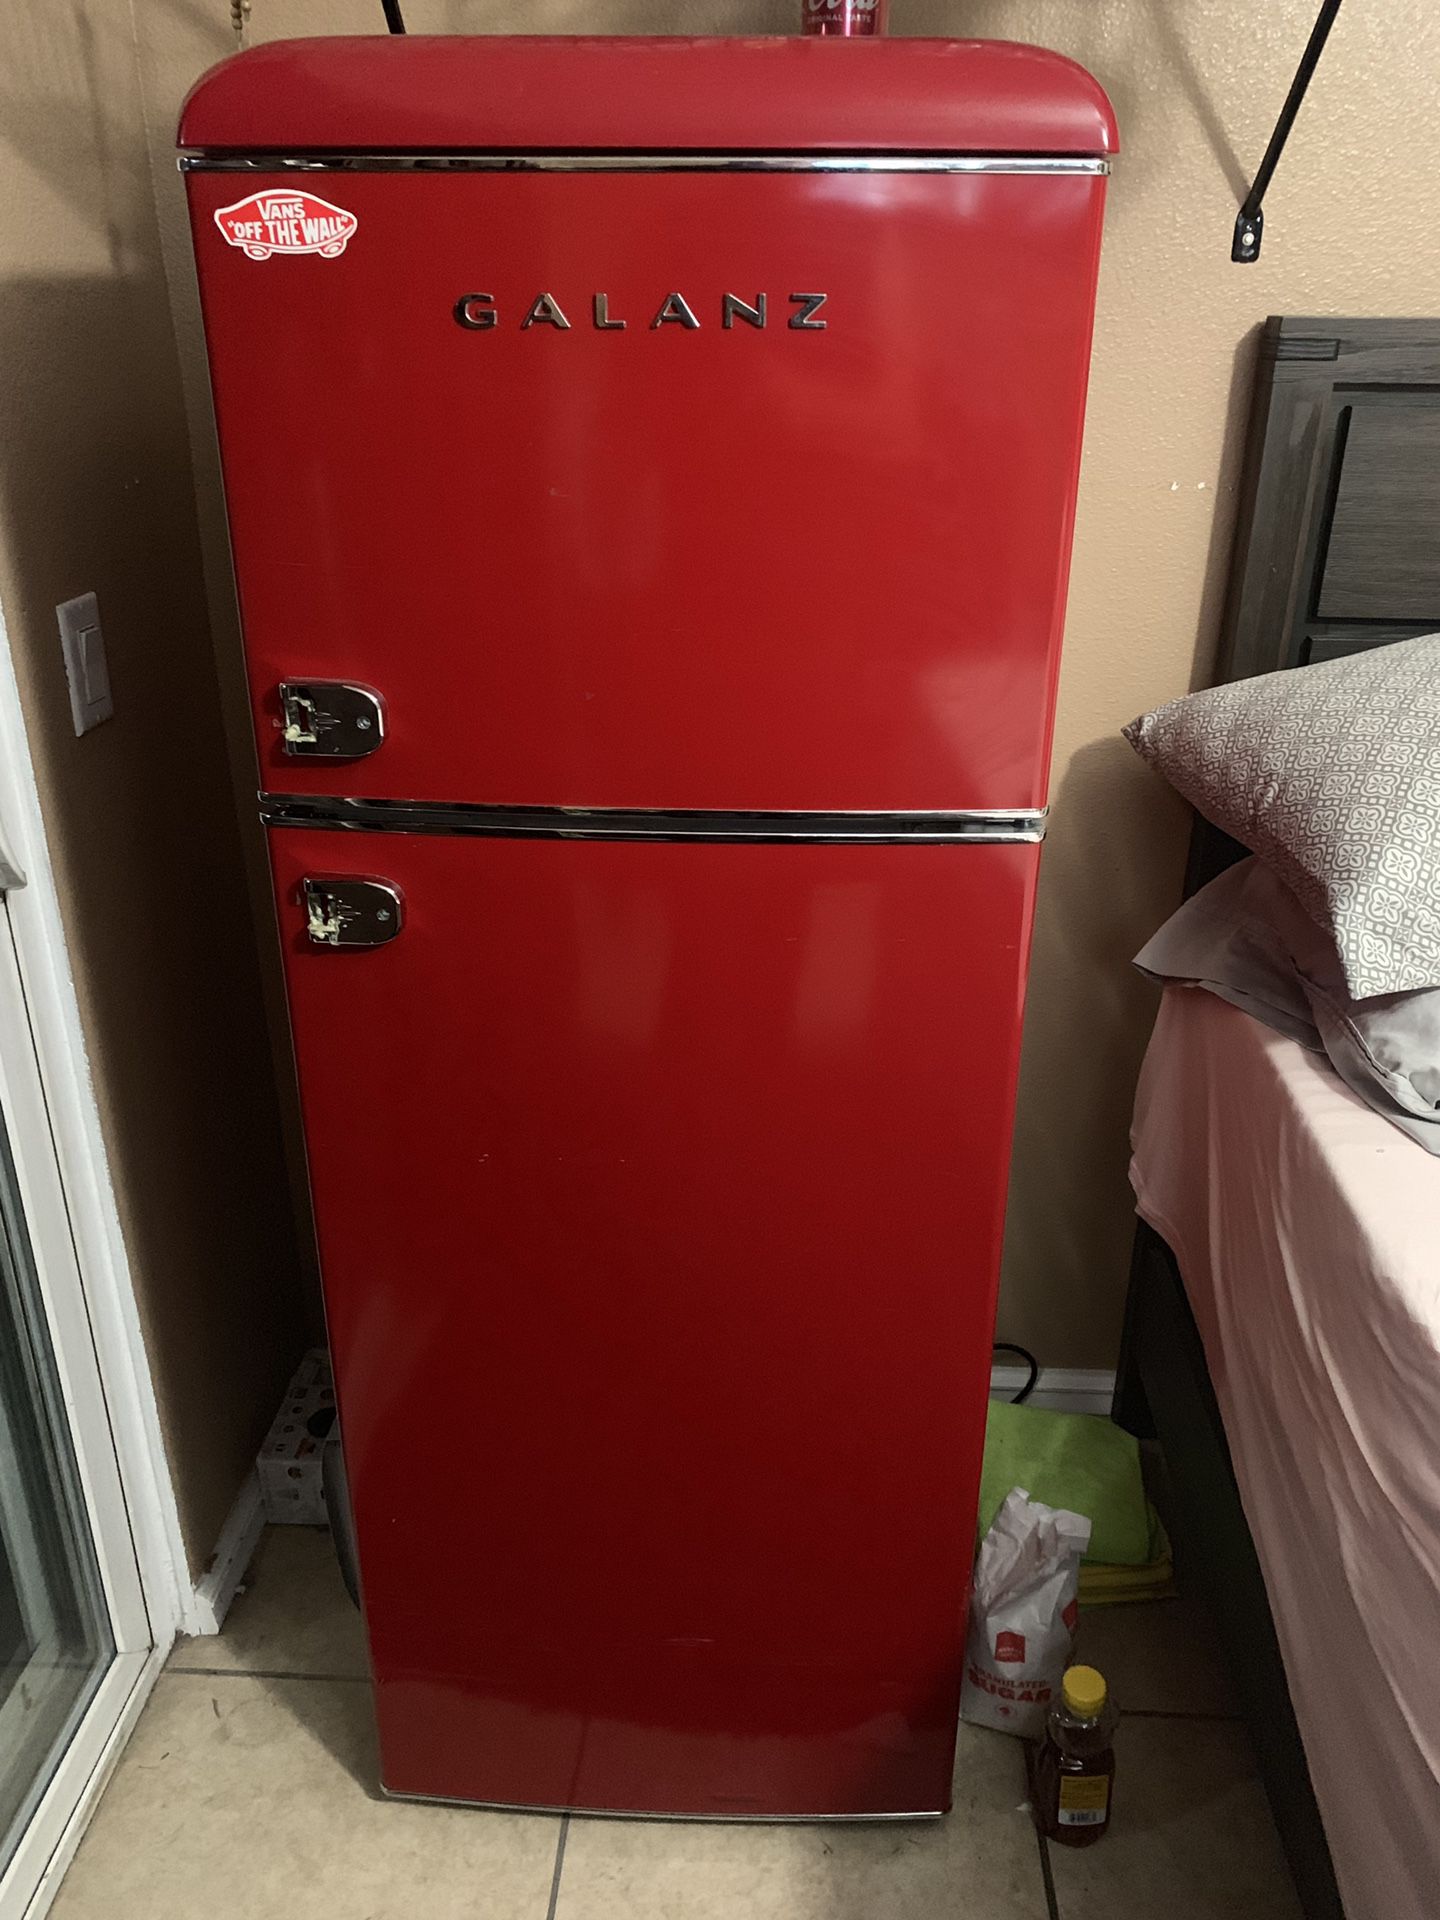 Galanz refrigerator and freezer